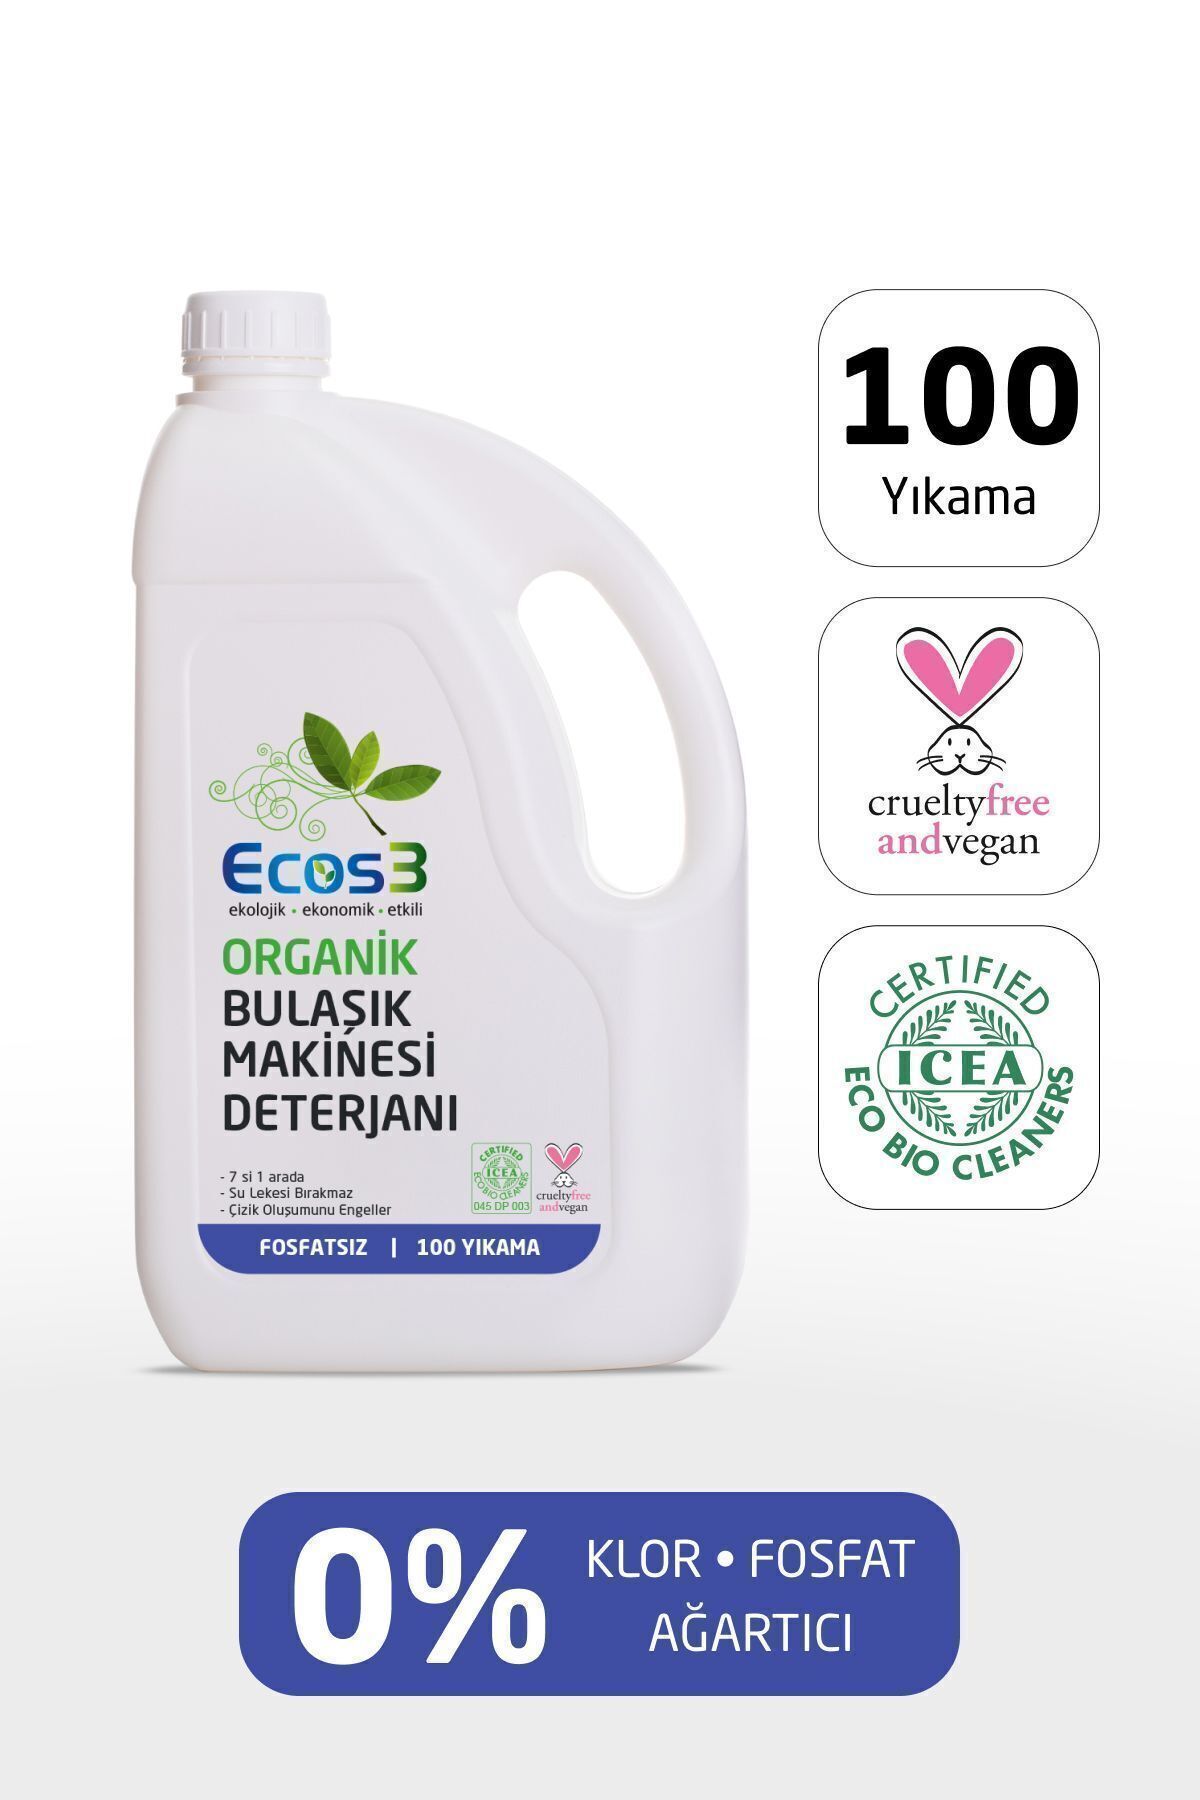 Ecos3 Bulaşık Makinesi Deterjanı, Organik & Vegan Sertifikalı, Ekolojik, 7’si Bir Arada 100 Yıkama, 2500ml